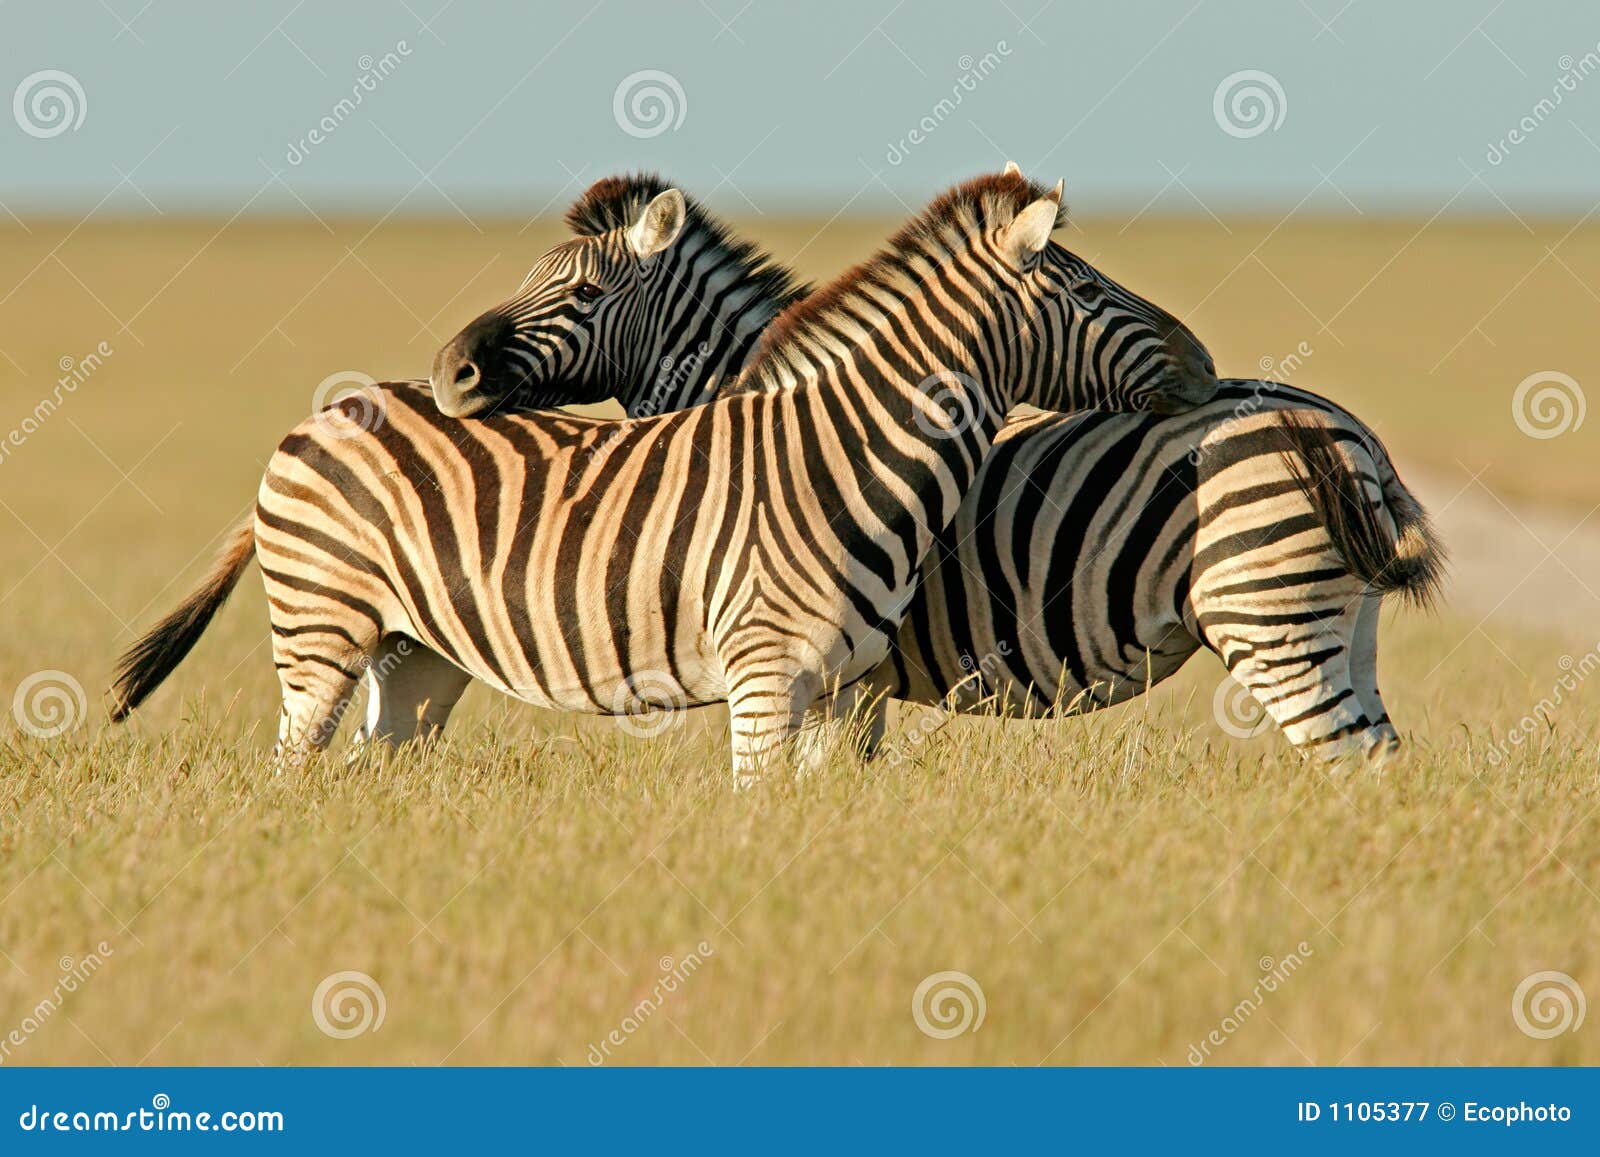 plains zebras, etosha national park, namibia